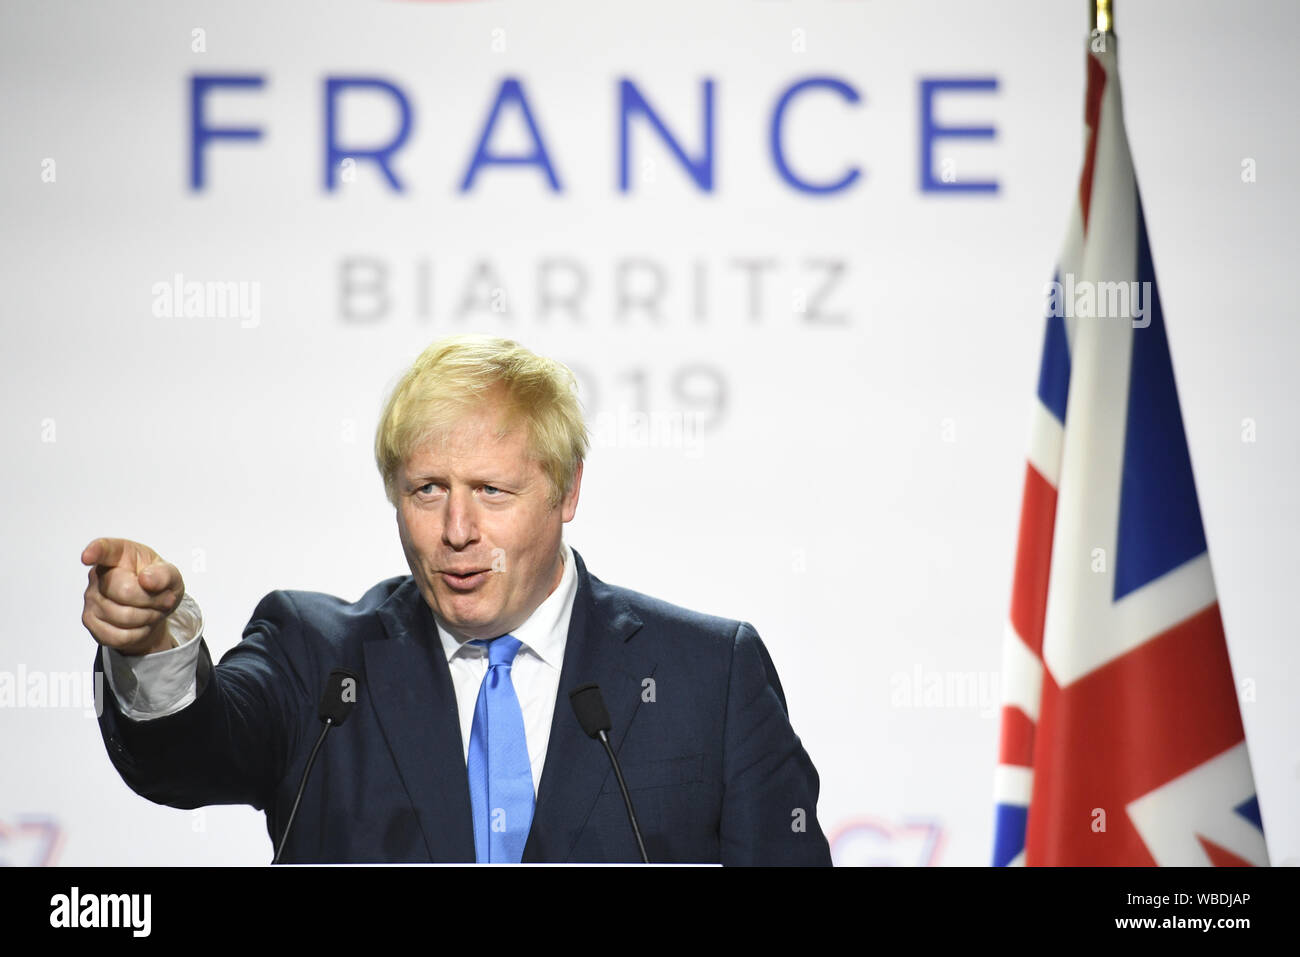 Premier ministre Boris Johnson lors d'une conférence de presse à l'issue du sommet du G7 de Biarritz, France. Banque D'Images